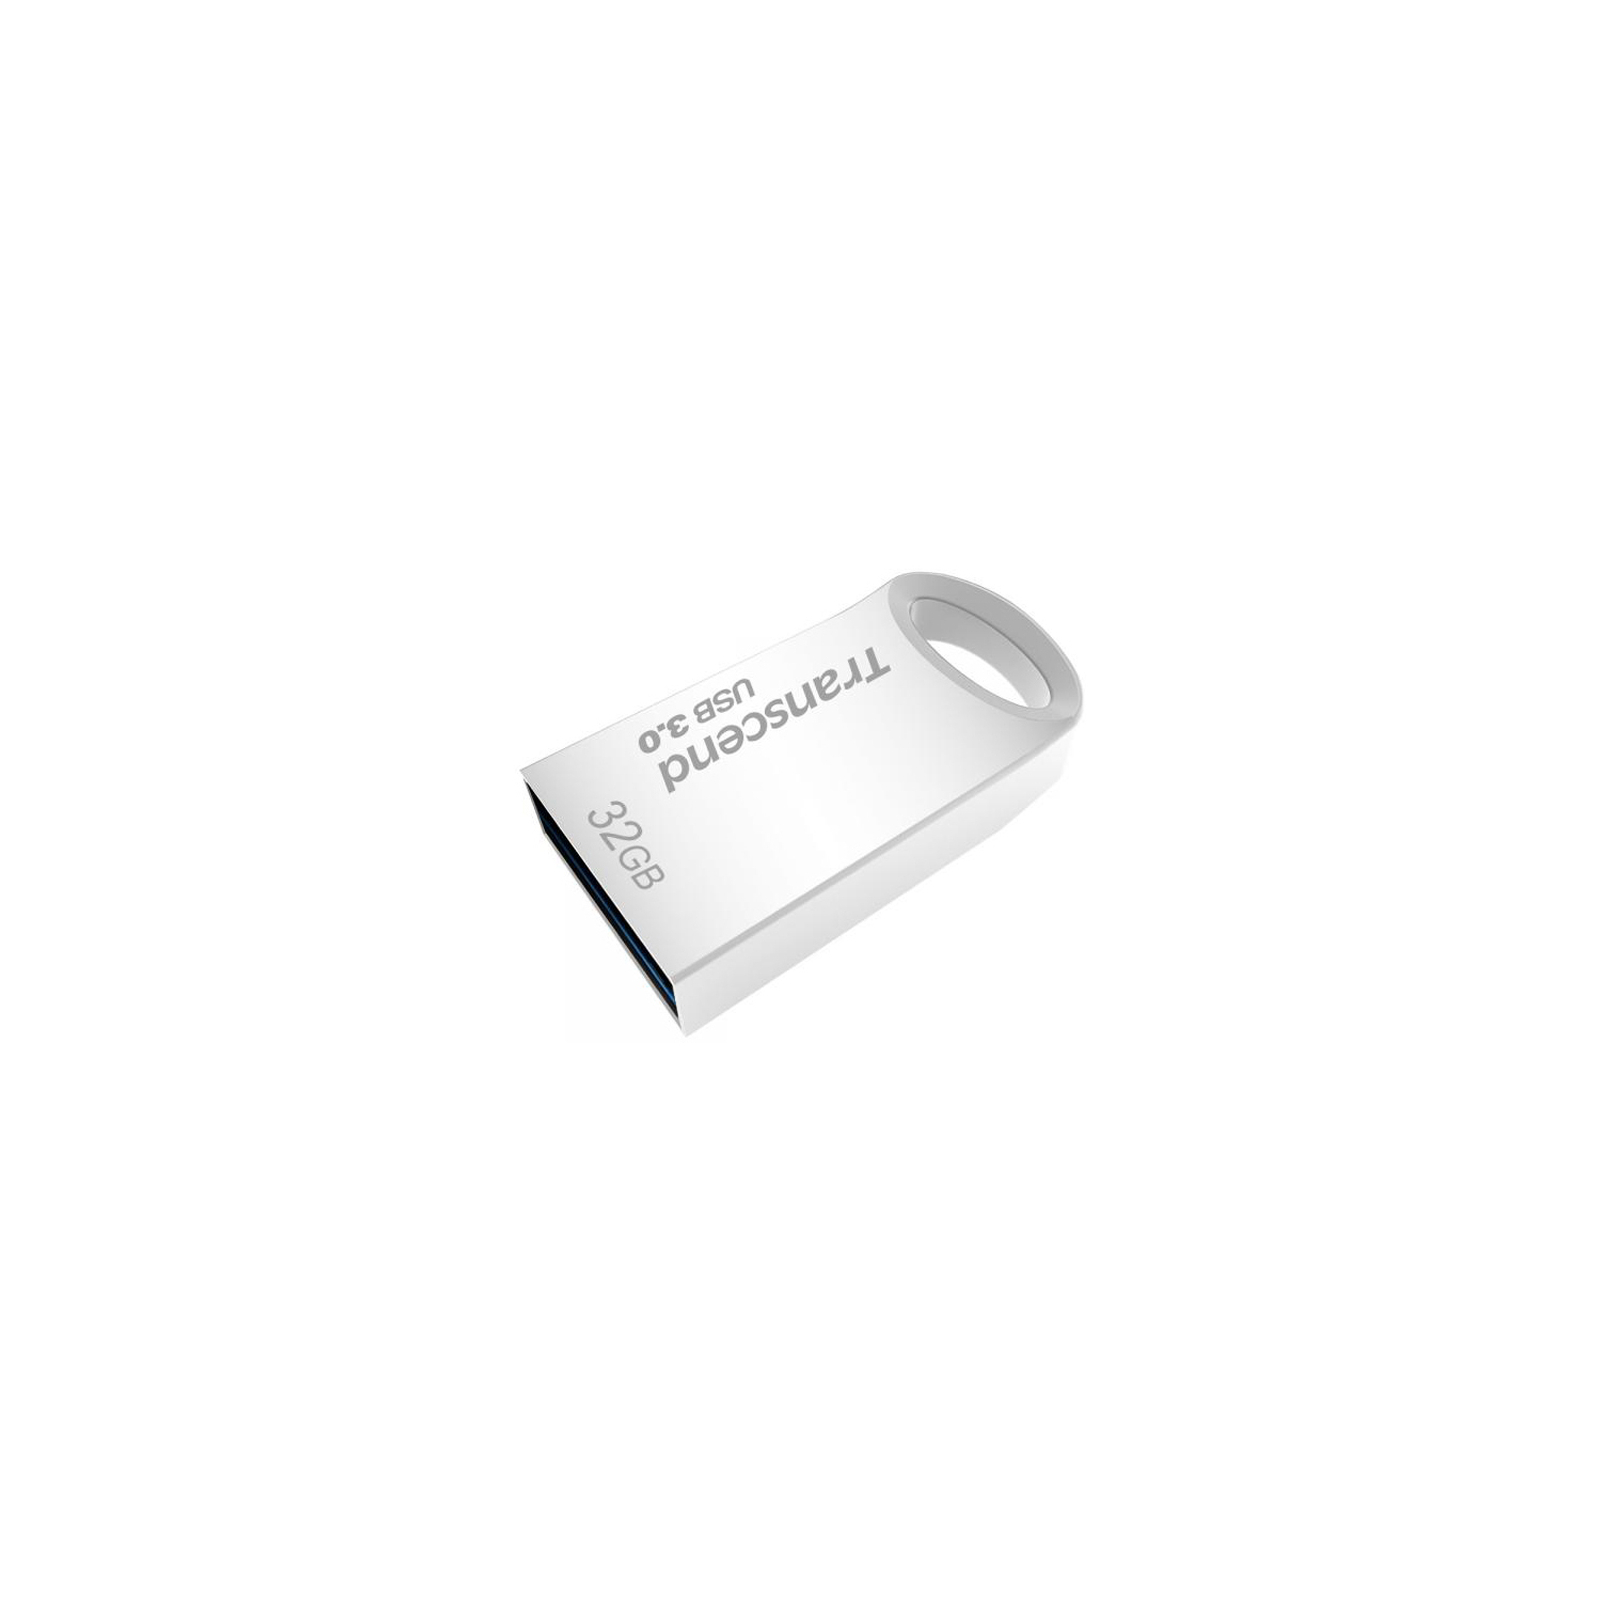 USB флеш накопичувач Transcend 16GB JetFlash 710 Metal Silver USB 3.0 (TS16GJF710S) зображення 3